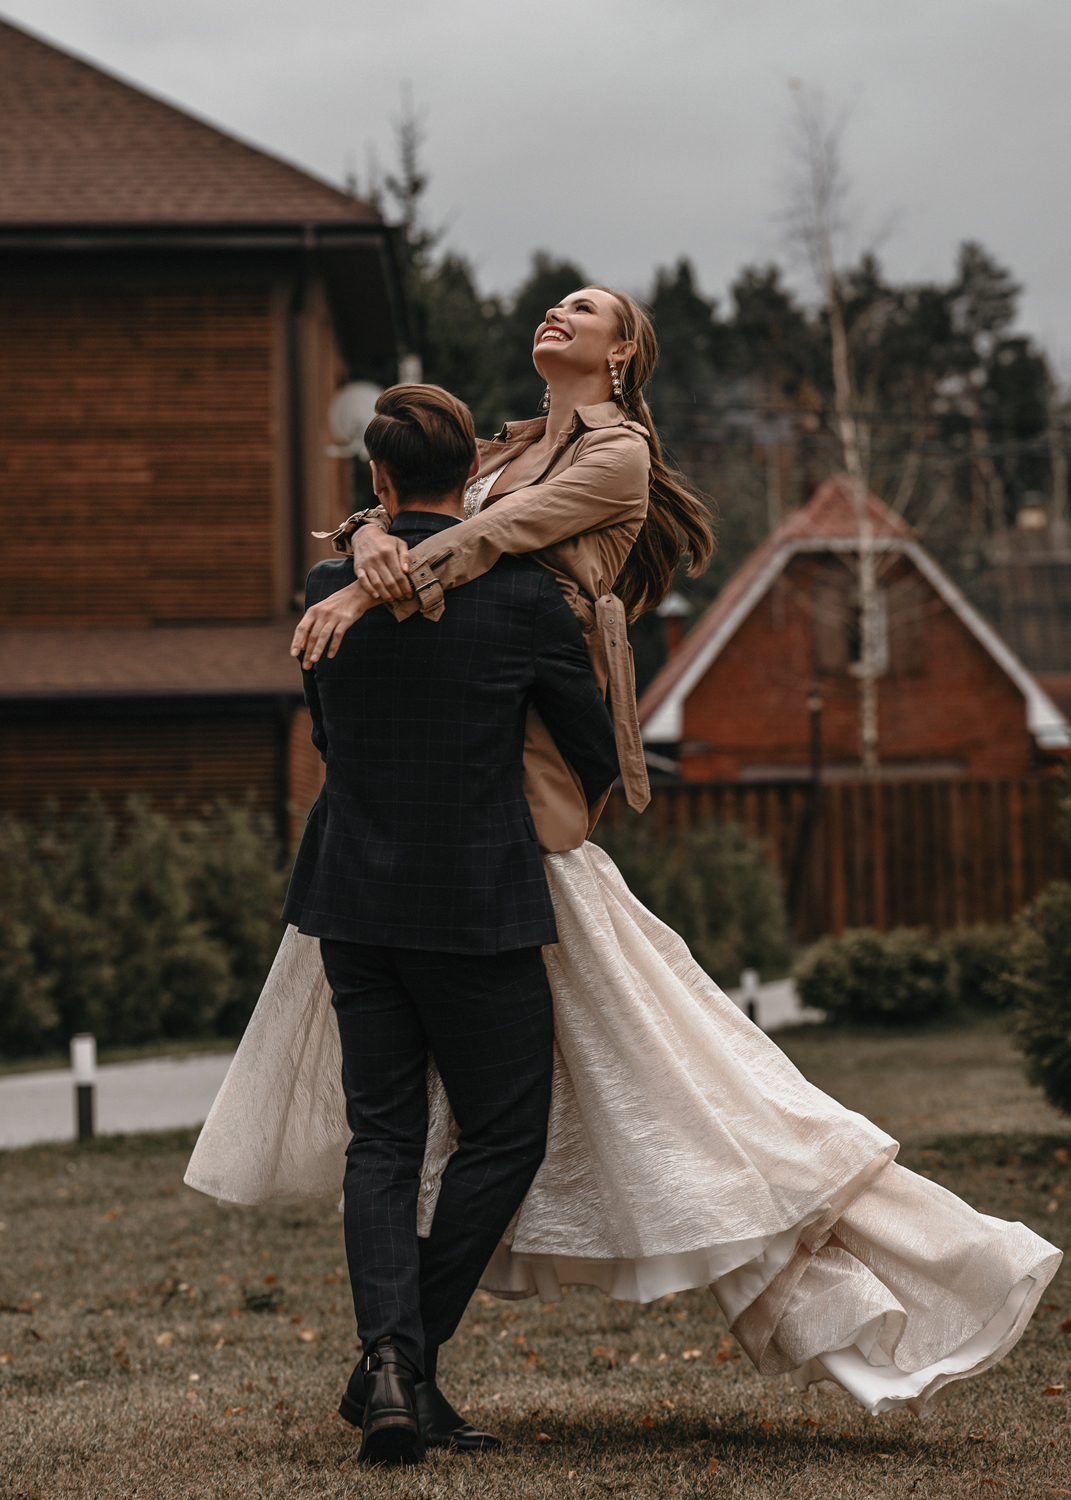 Запечатлите вашу любовь в каждом кадре! Профессиональный свадебный фотограф в Москве